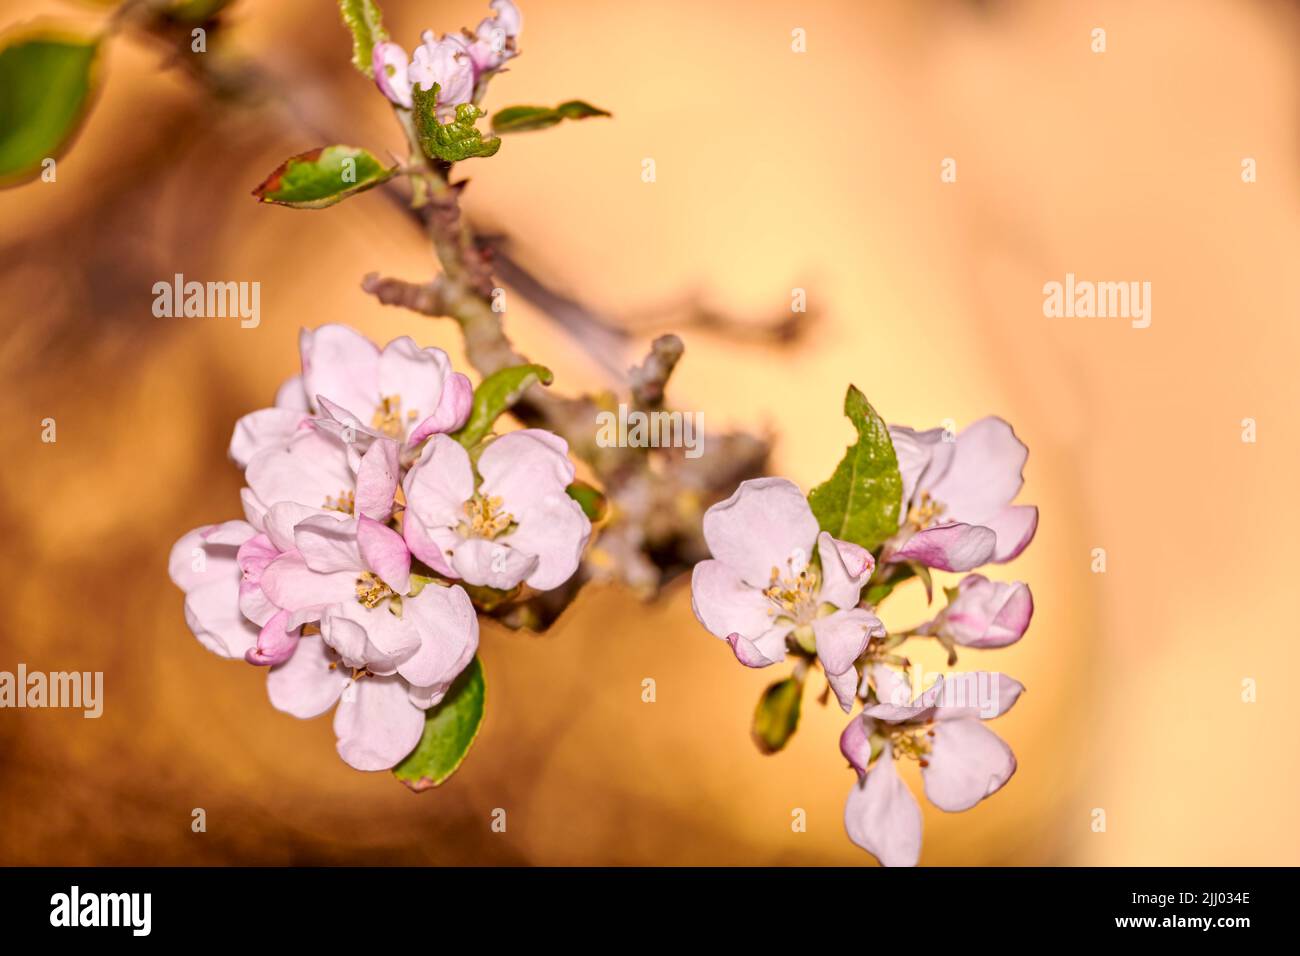 Landschaftsansicht von schönen isolierten Blumen im Fokus. Blüht von einem Baum im Freien. Sonne scheint auf fokussierte rosa Blume Gruppe mit grün Stockfoto